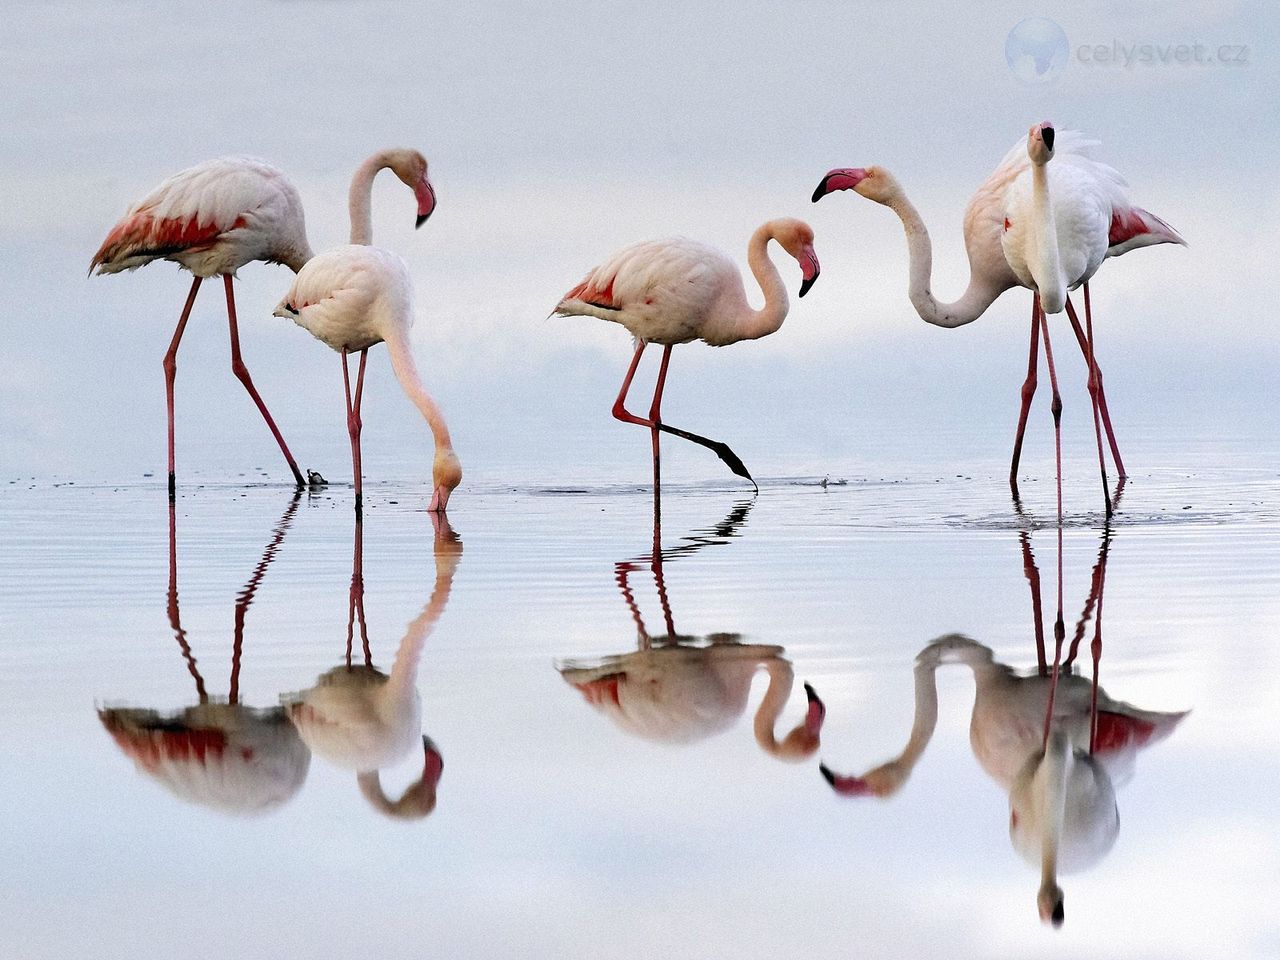 Foto: Greater Flamingos, Fuente De Piedra Lagoon, Spain